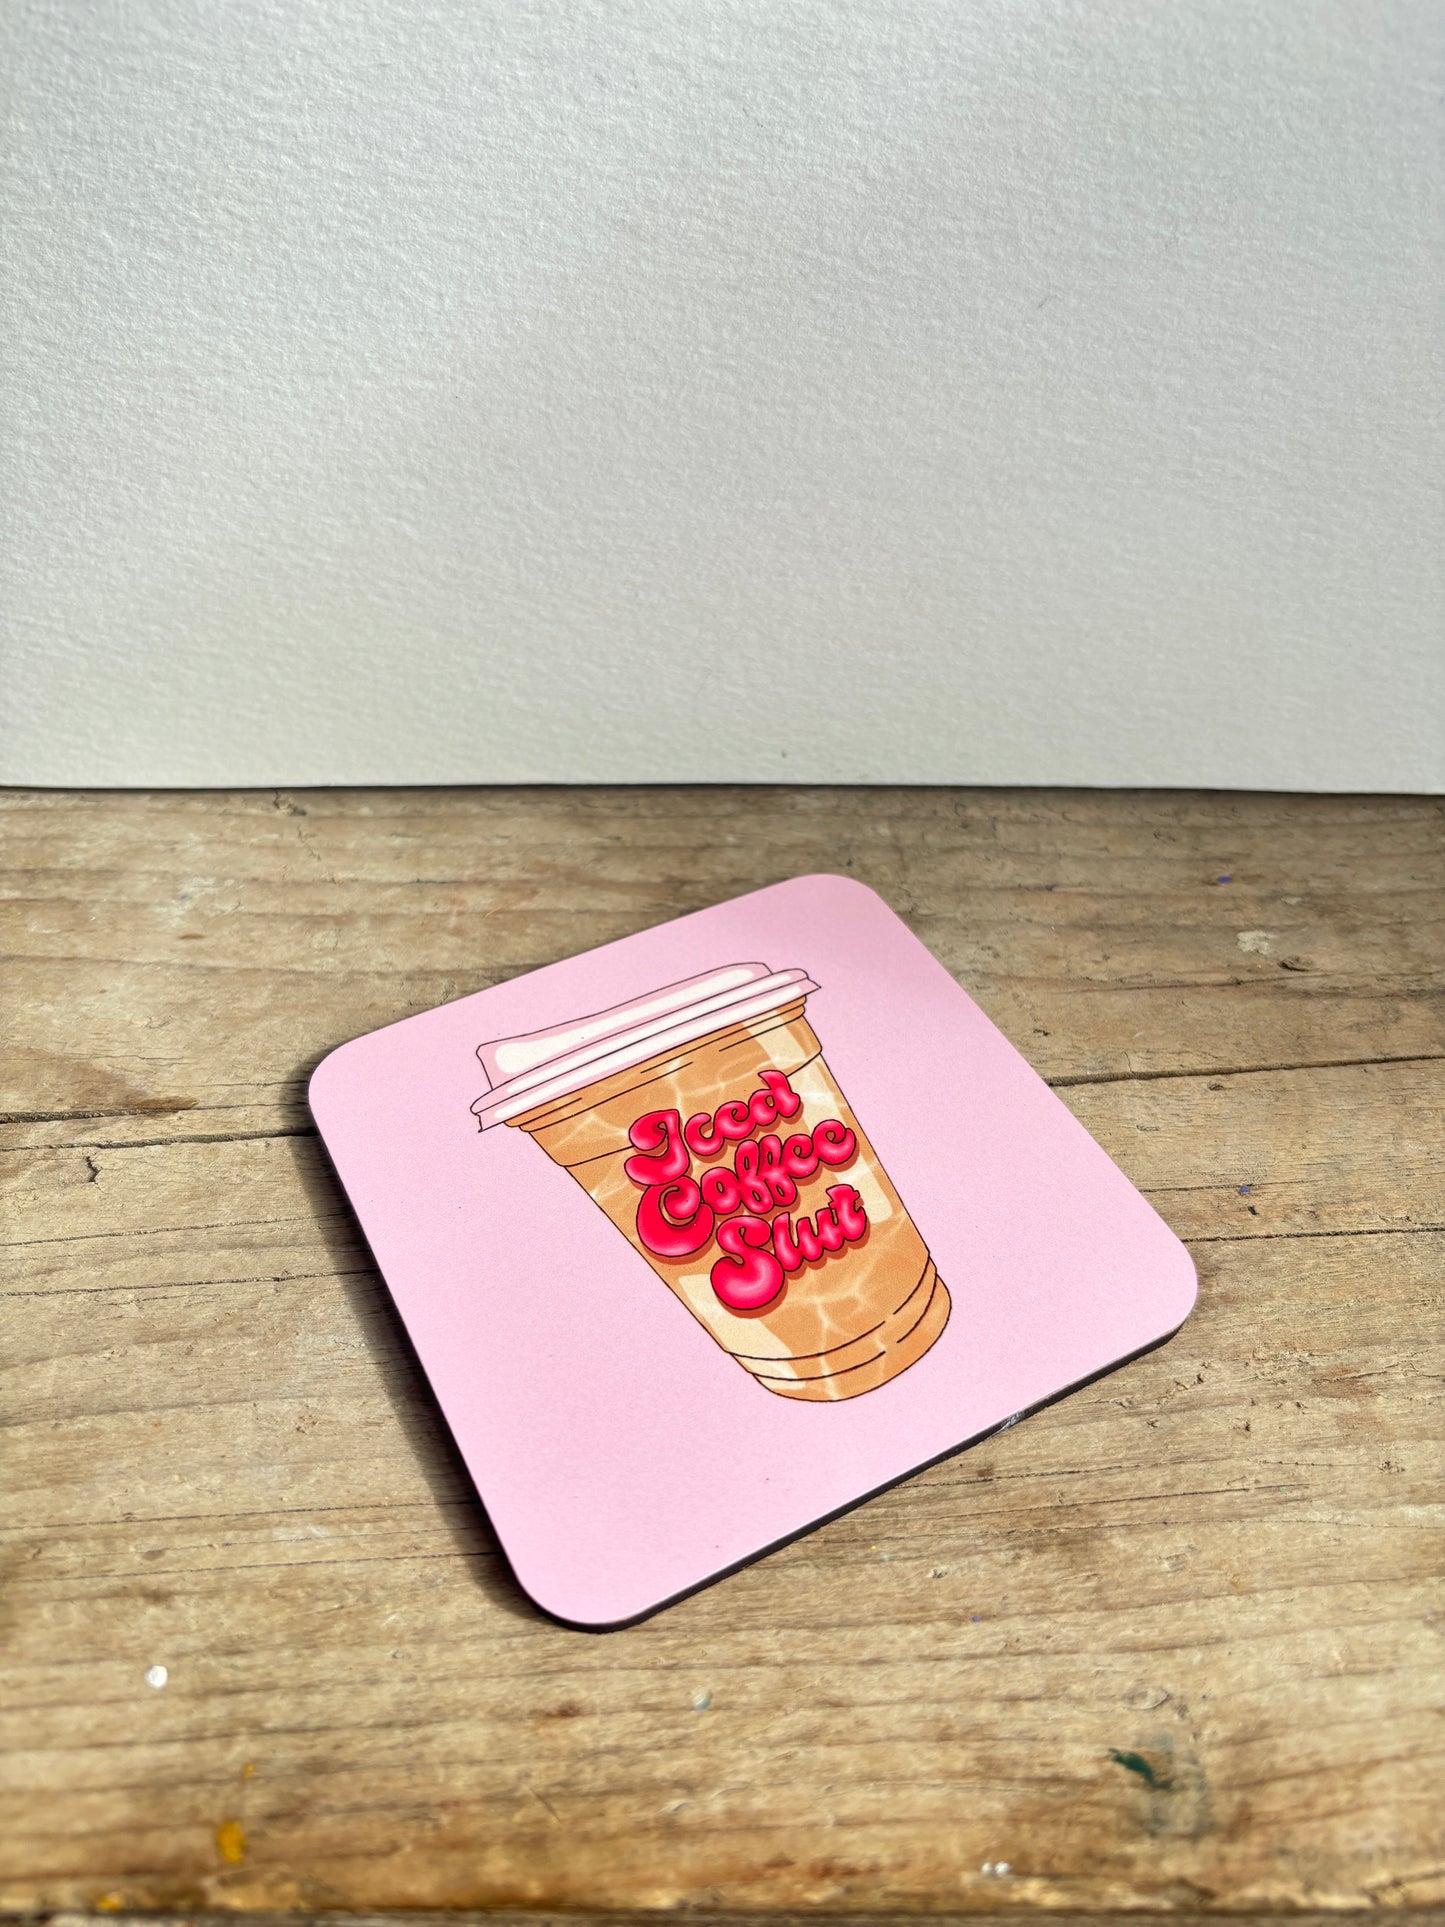 Iced Coffee Slut Coaster